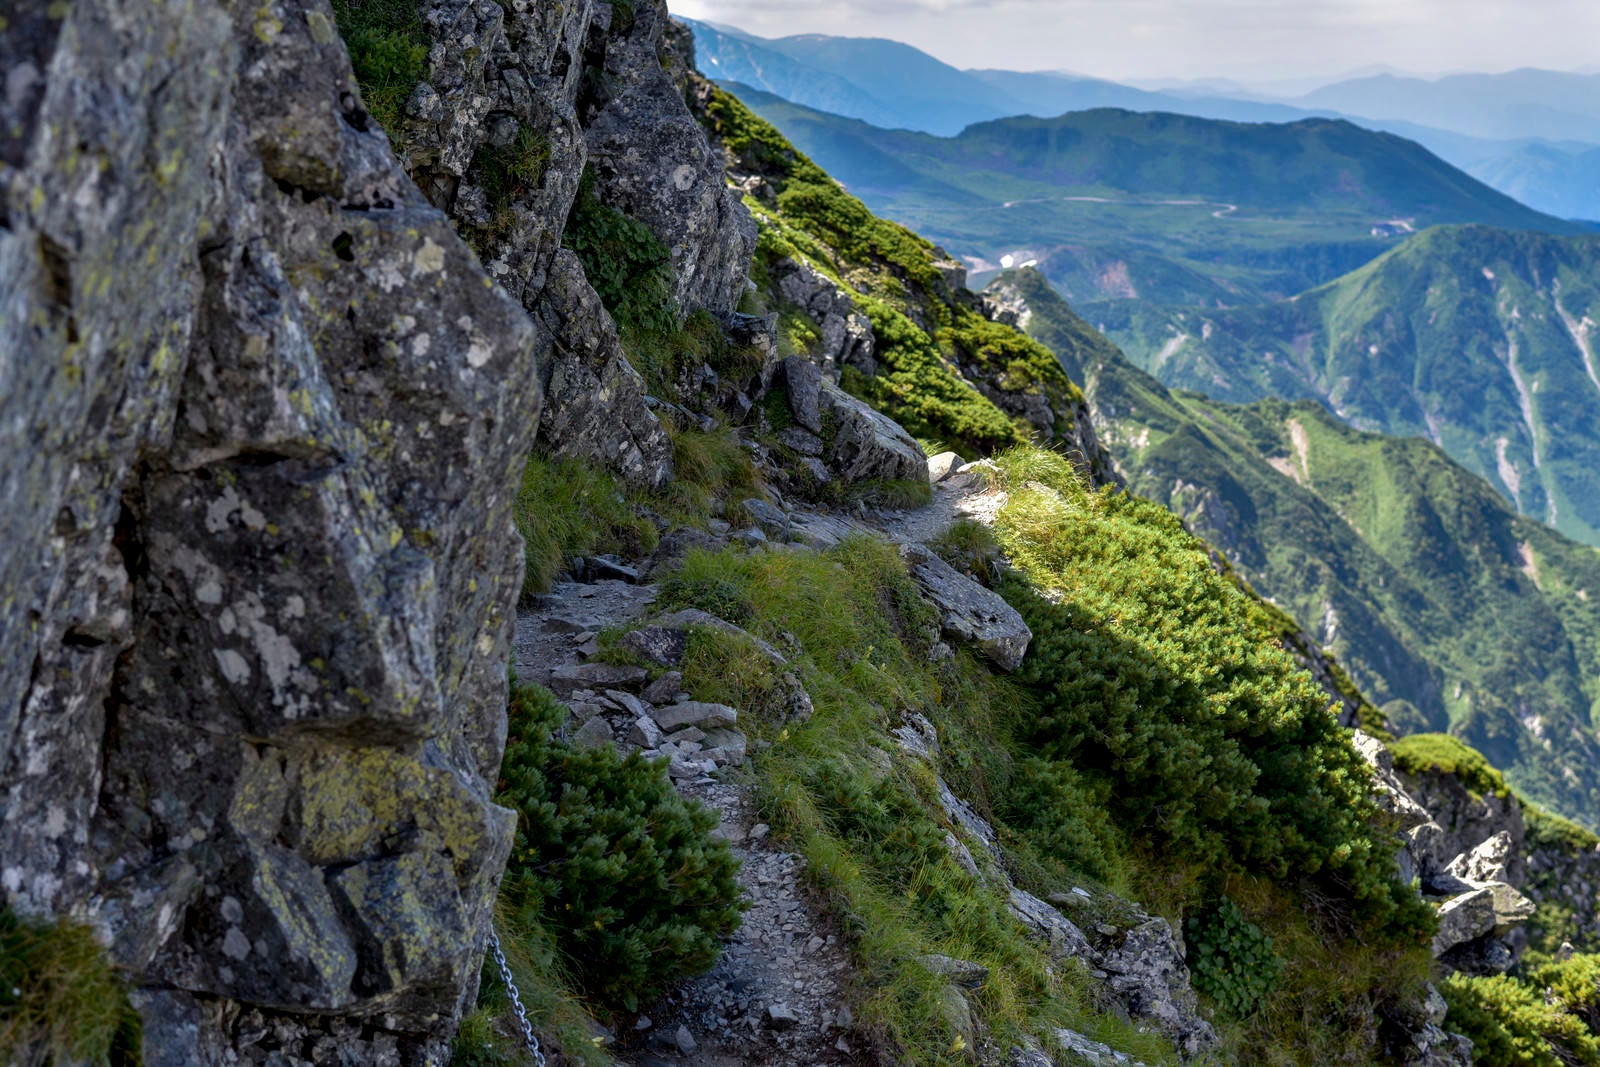 「気を抜けば滑落する険しい登山道が続く剱岳」の写真